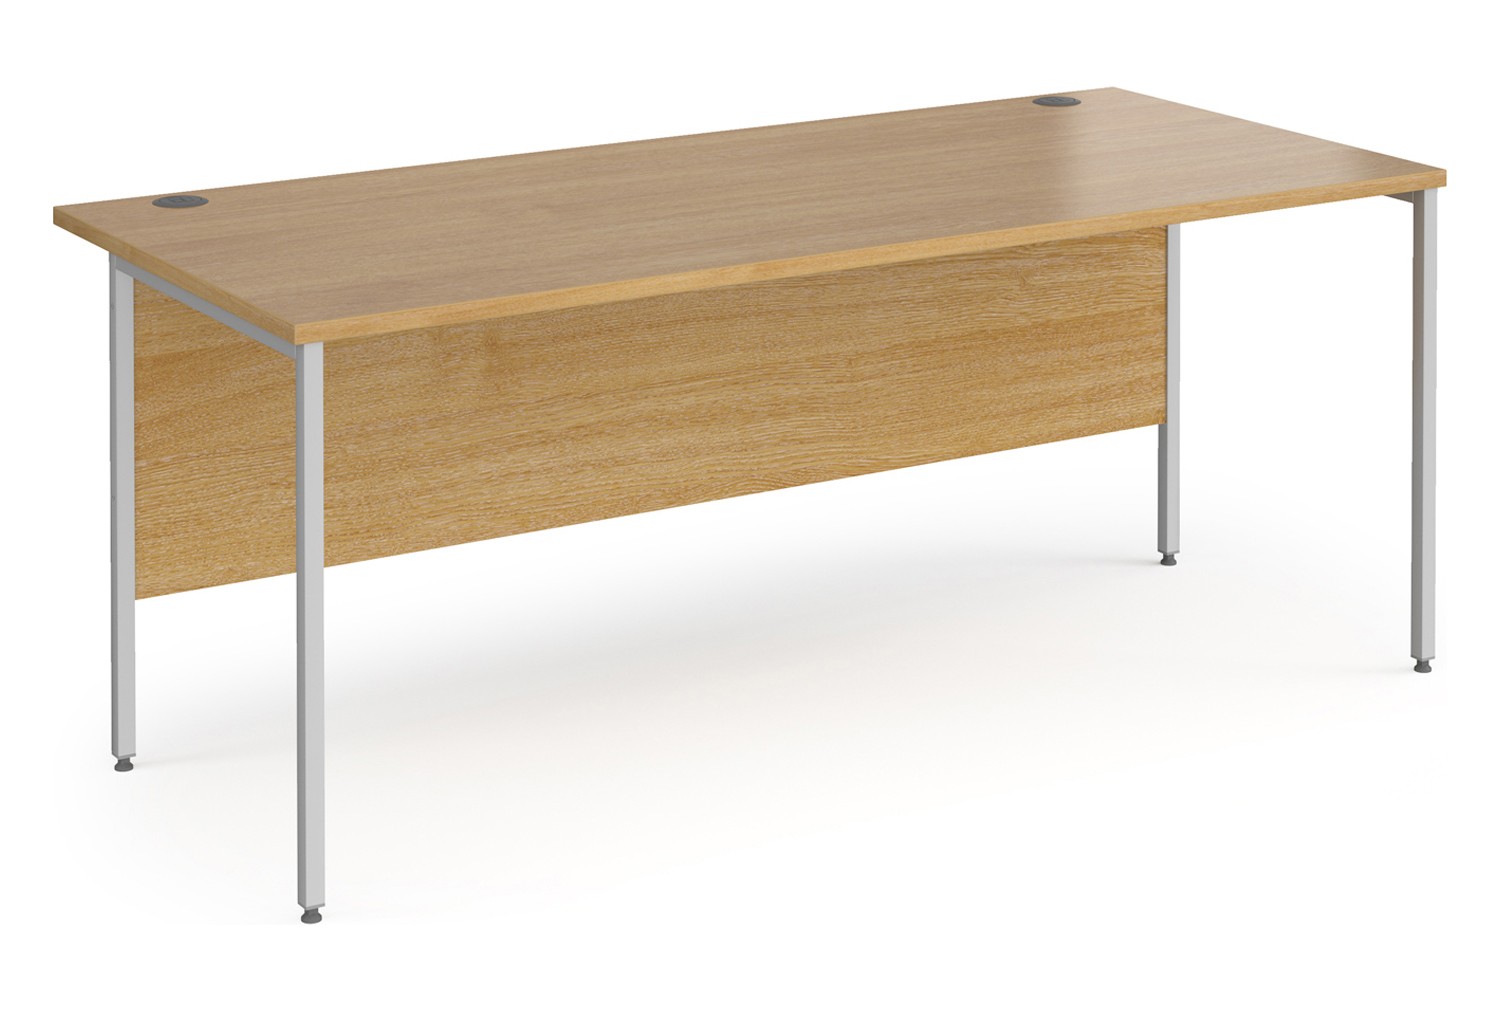 Value Line Classic+ Rectangular H-Leg Office Desk (Silver Leg), 180wx80dx73h (cm), Oak, Fully Installed